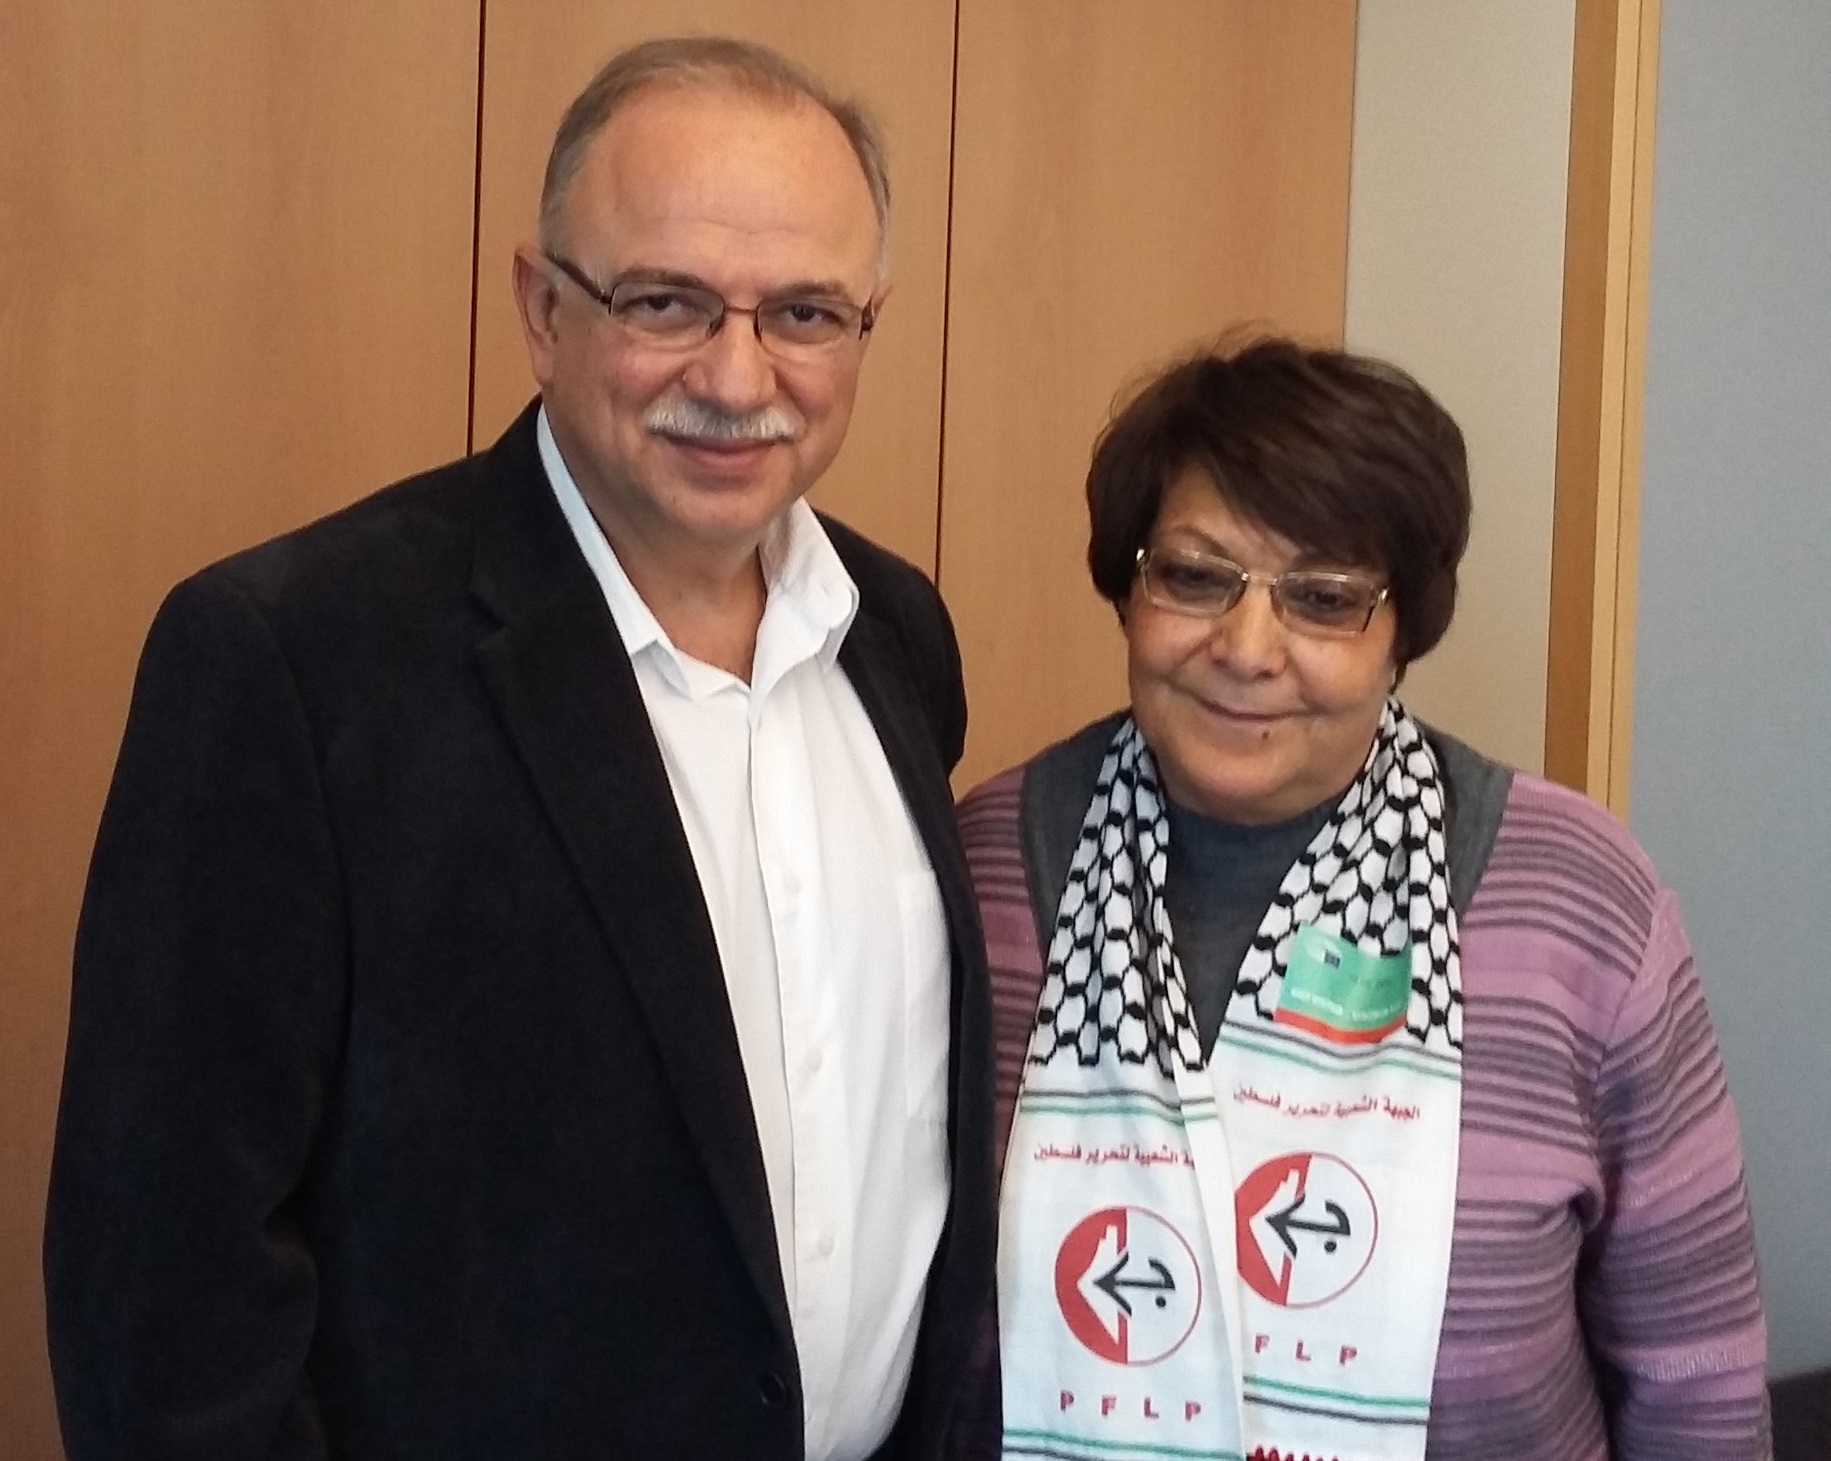 Συνάντηση του Δημήτρη Παπαδημούλη με την Λέιλα Χάλεντ και αντιπροσωπεία του Λαϊκού μετώπου για την Απελευθέρωση της Παλαιστίνης PFLP